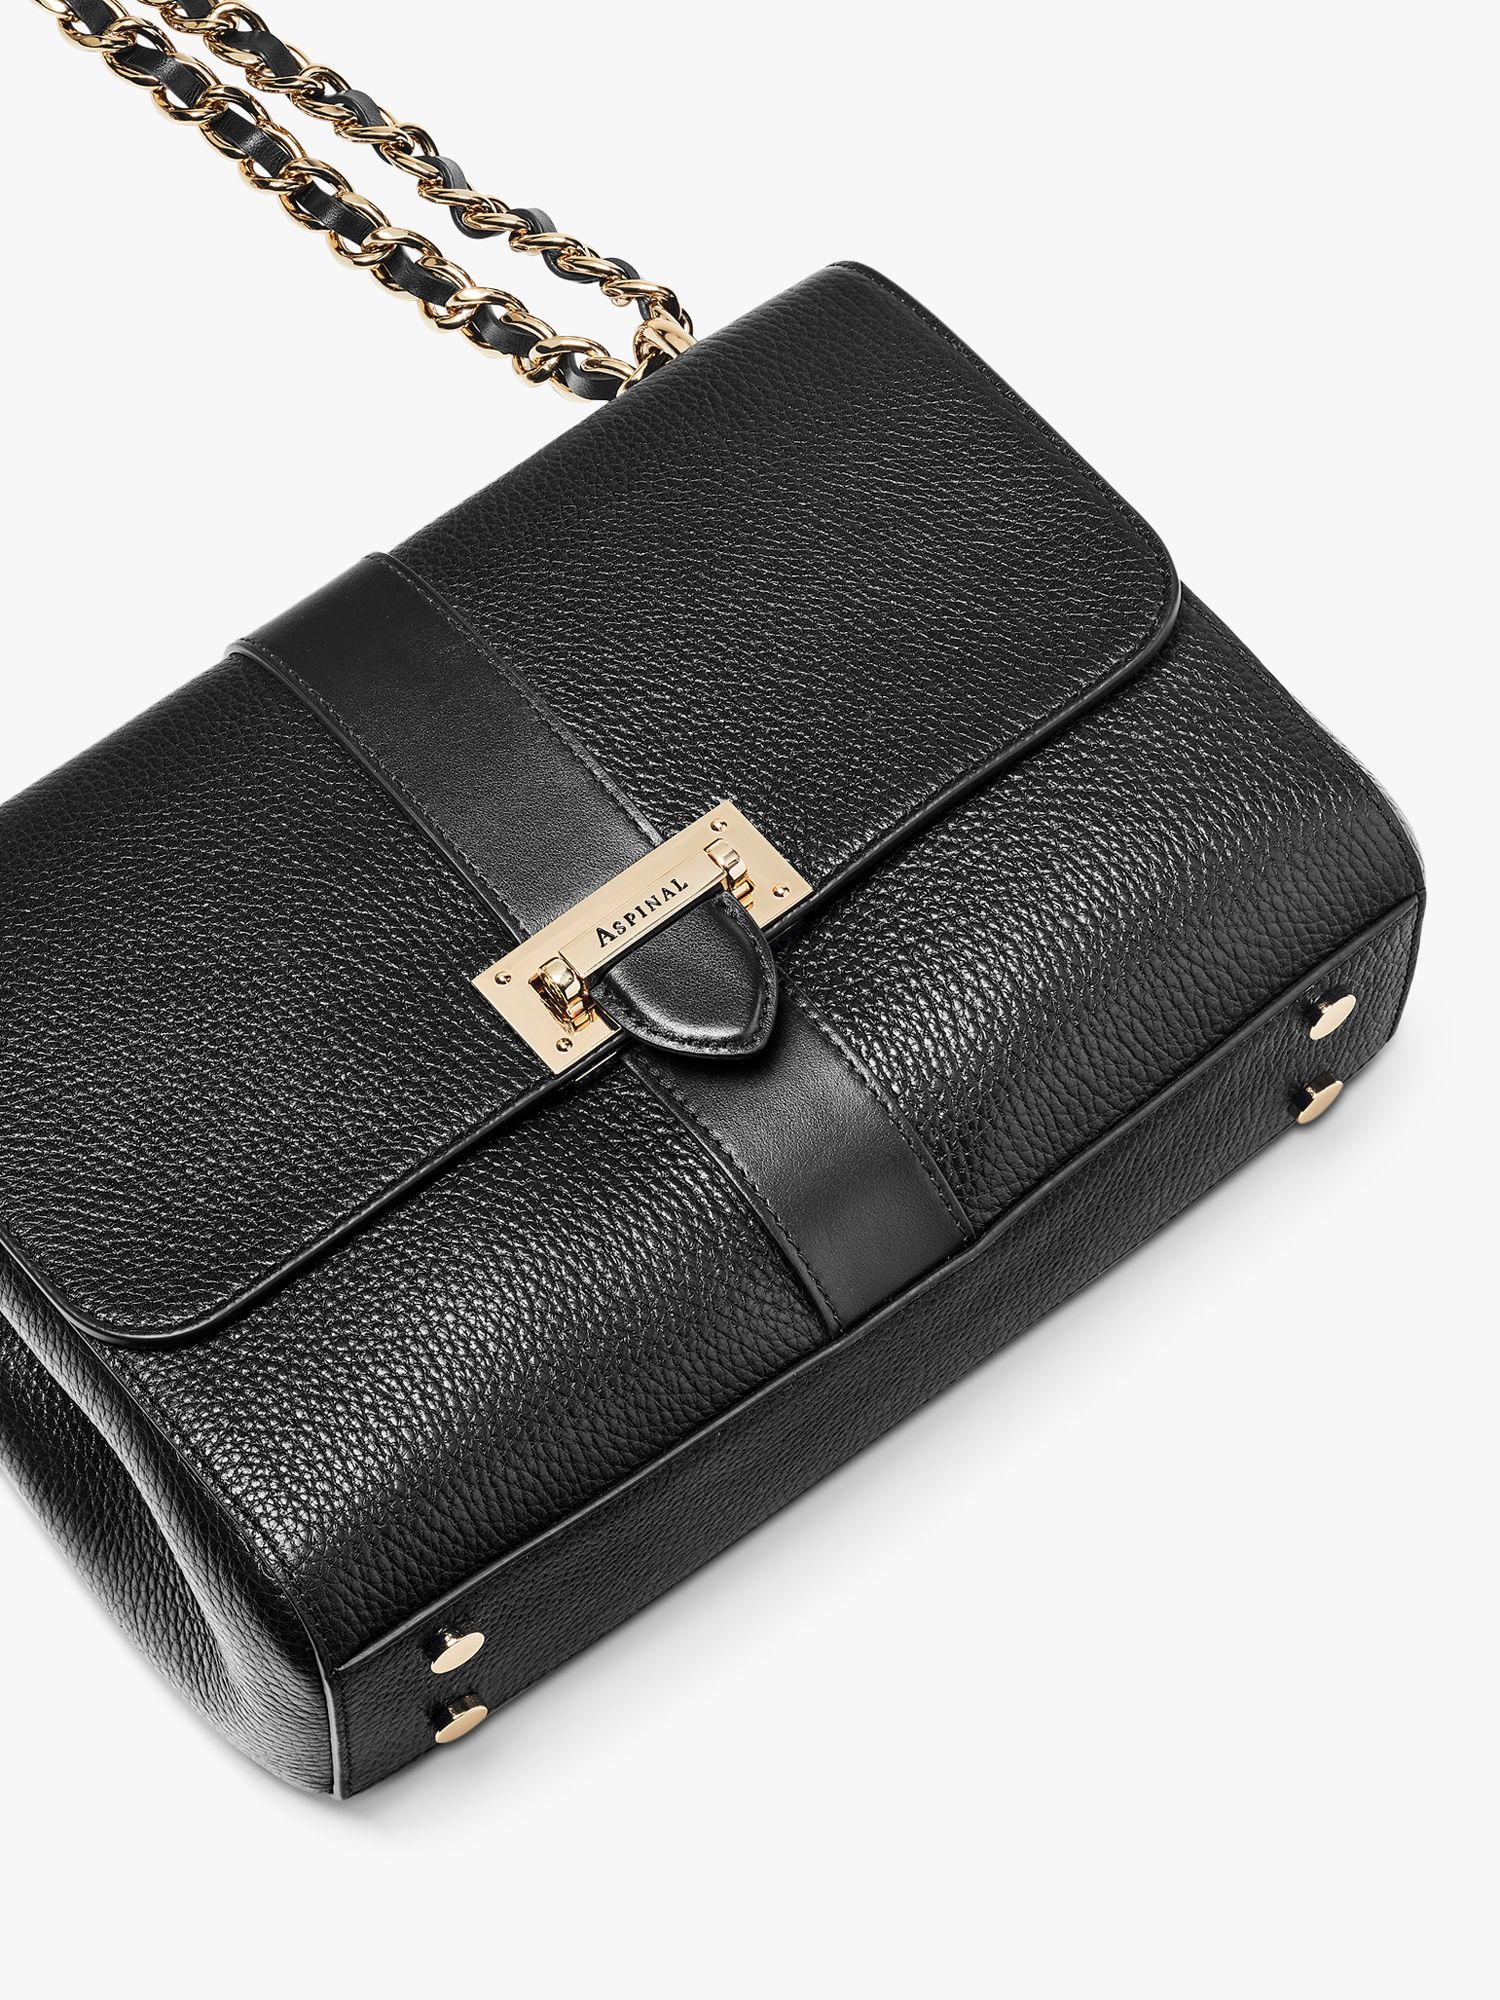 Aspinal of London Lottie Large Pebble Leather Shoulder Bag, Black at ...